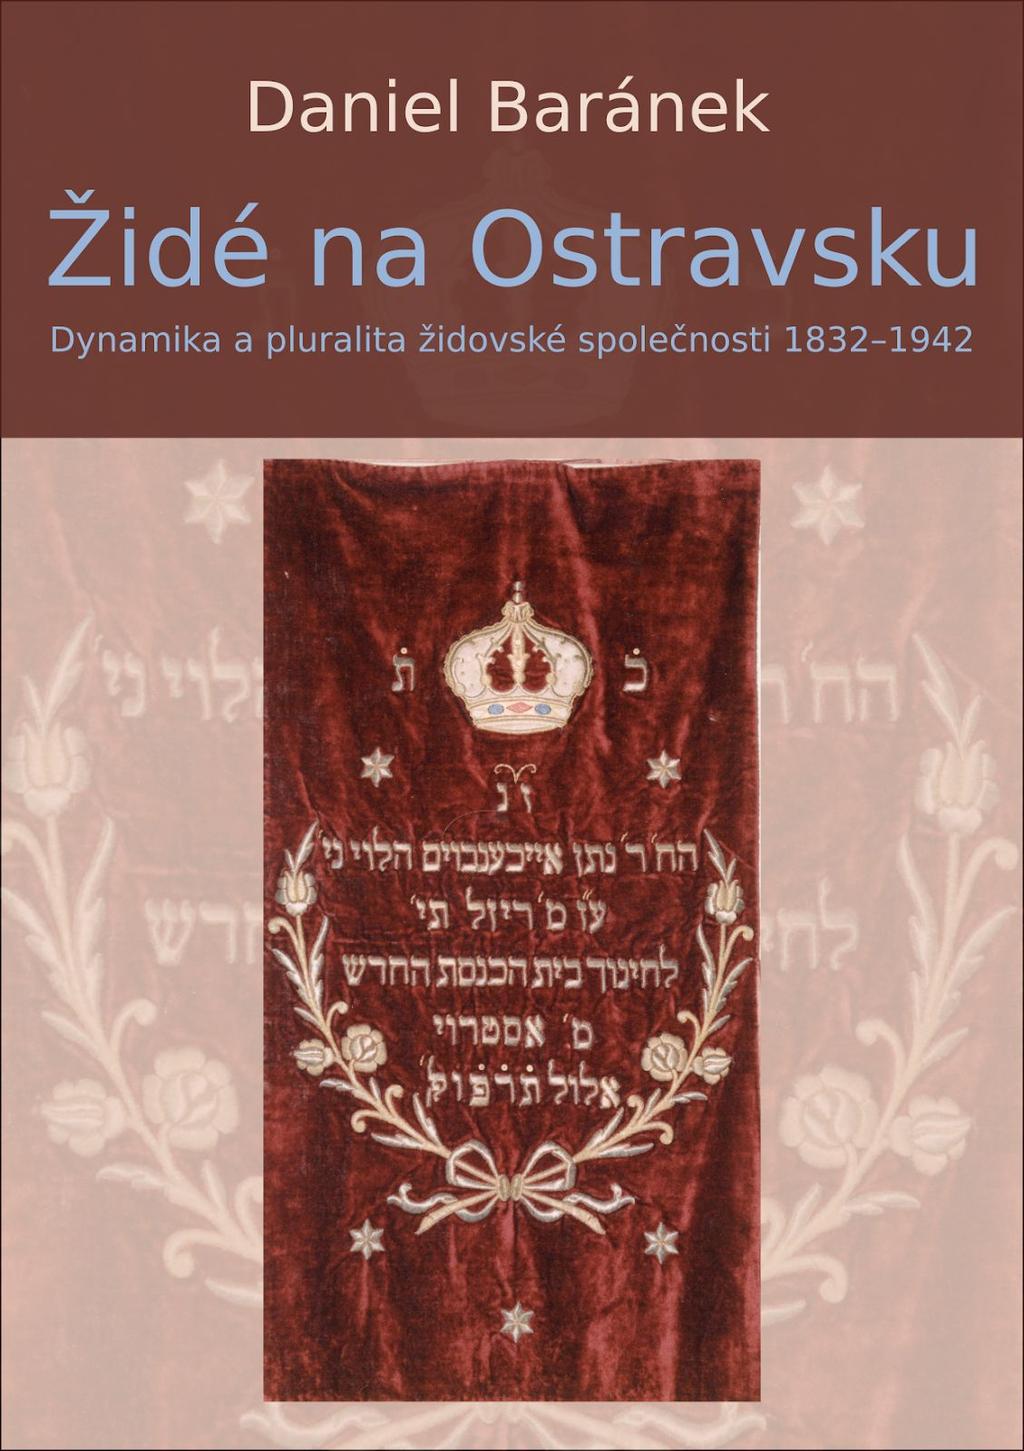 Vydali jsme knihu Dne 7. 12. 2017 proběhlo v antikvariátu a klubu Fiducia slavnostní uvedení monografie Židé na Ostravsku, kterou zpracoval pan Mgr. Daniel Baránek.